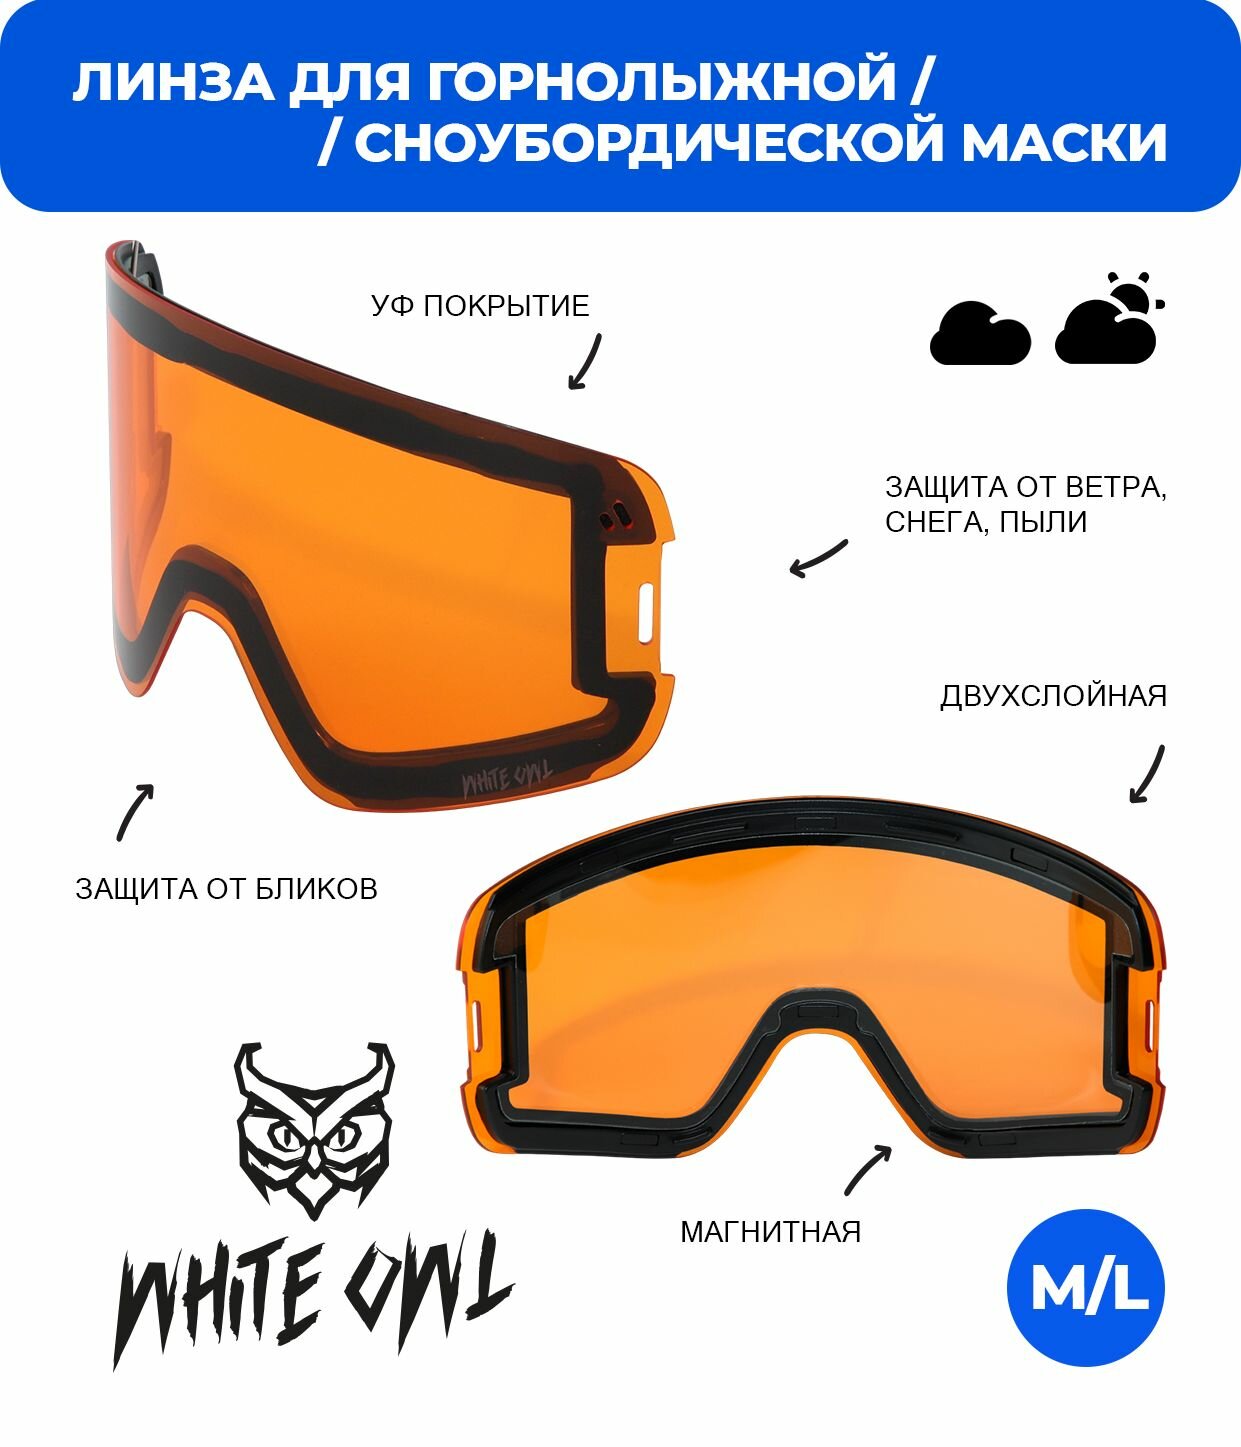 Линза магнитная White Owl FA-030 M/L оранжевая магнитная